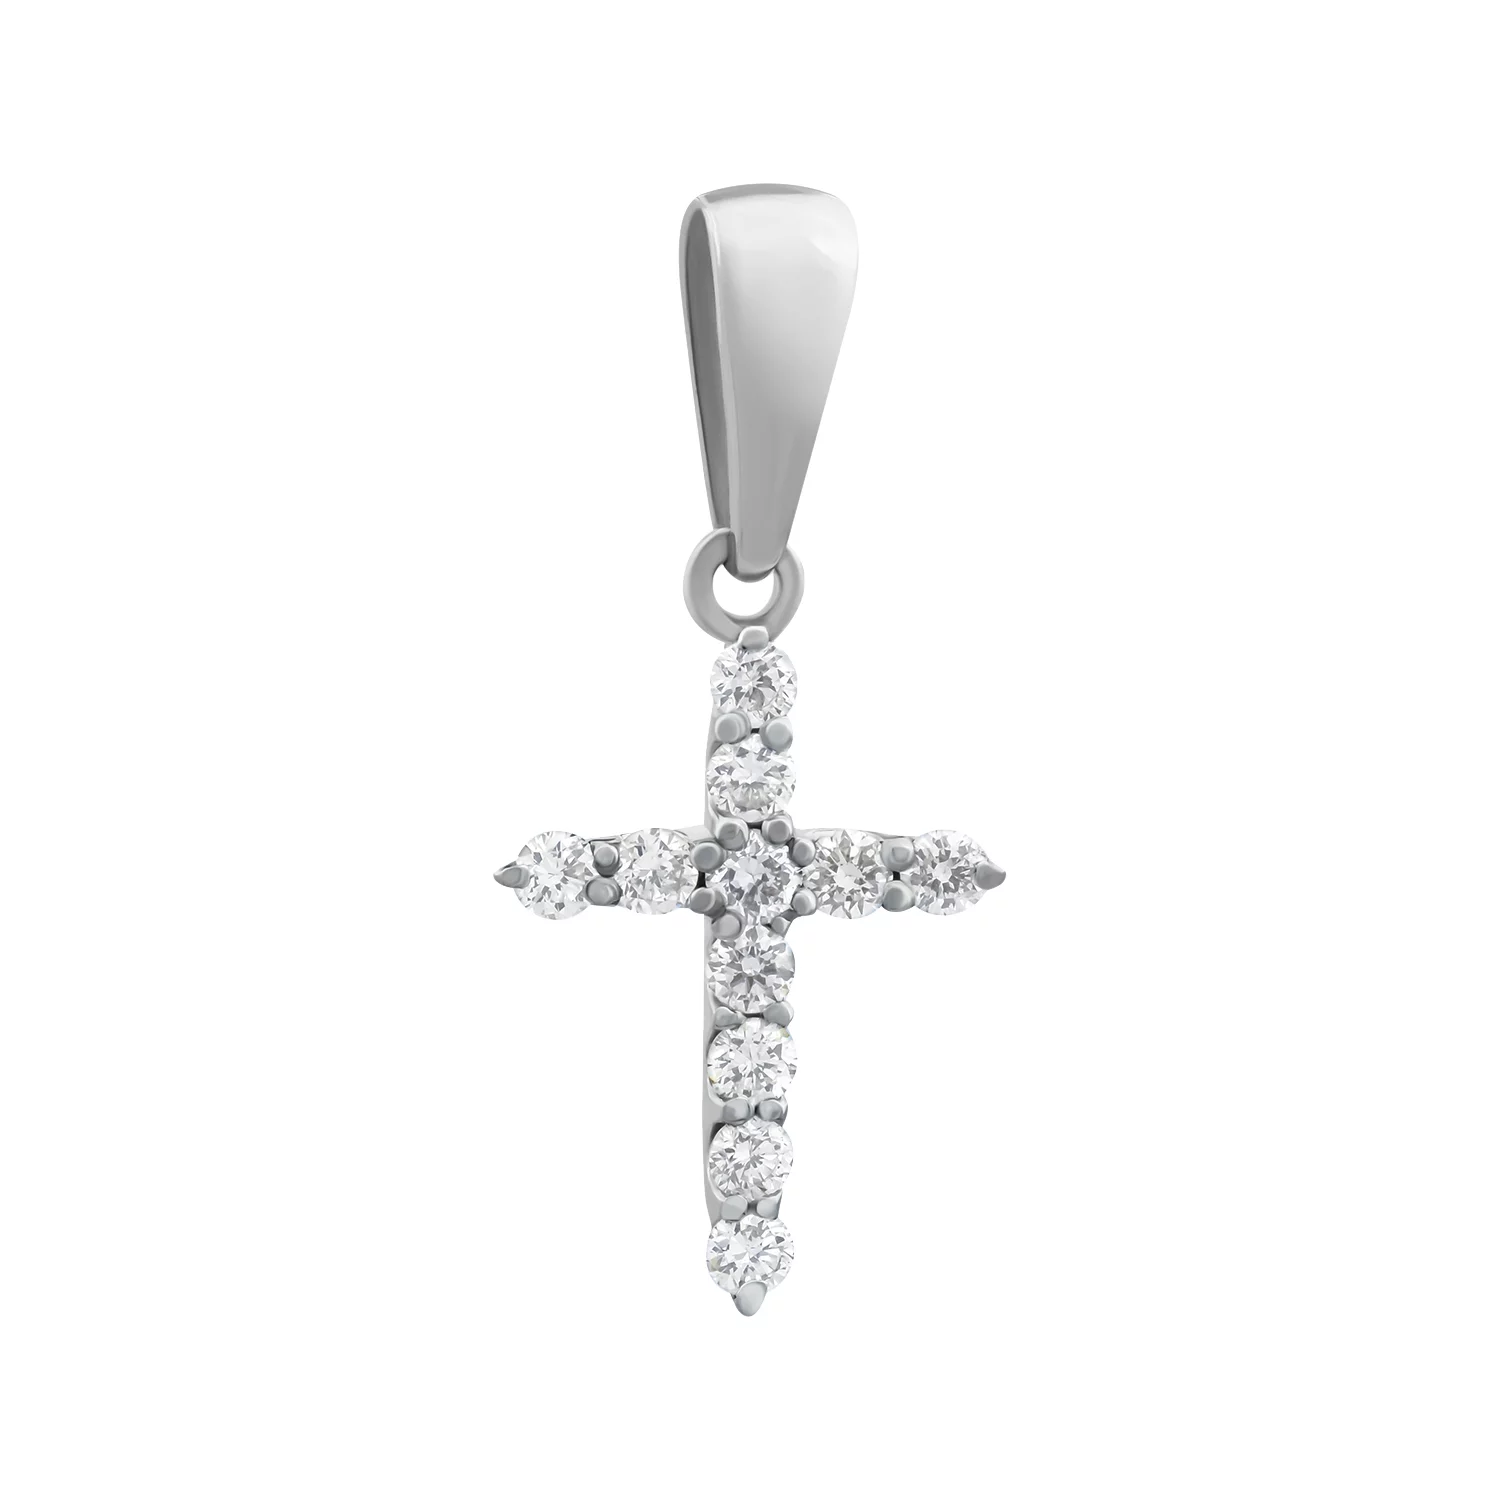 Крестик из белого золота с бриллиантами. Артикул П466б: цена, отзывы, фото – купить в интернет-магазине AURUM